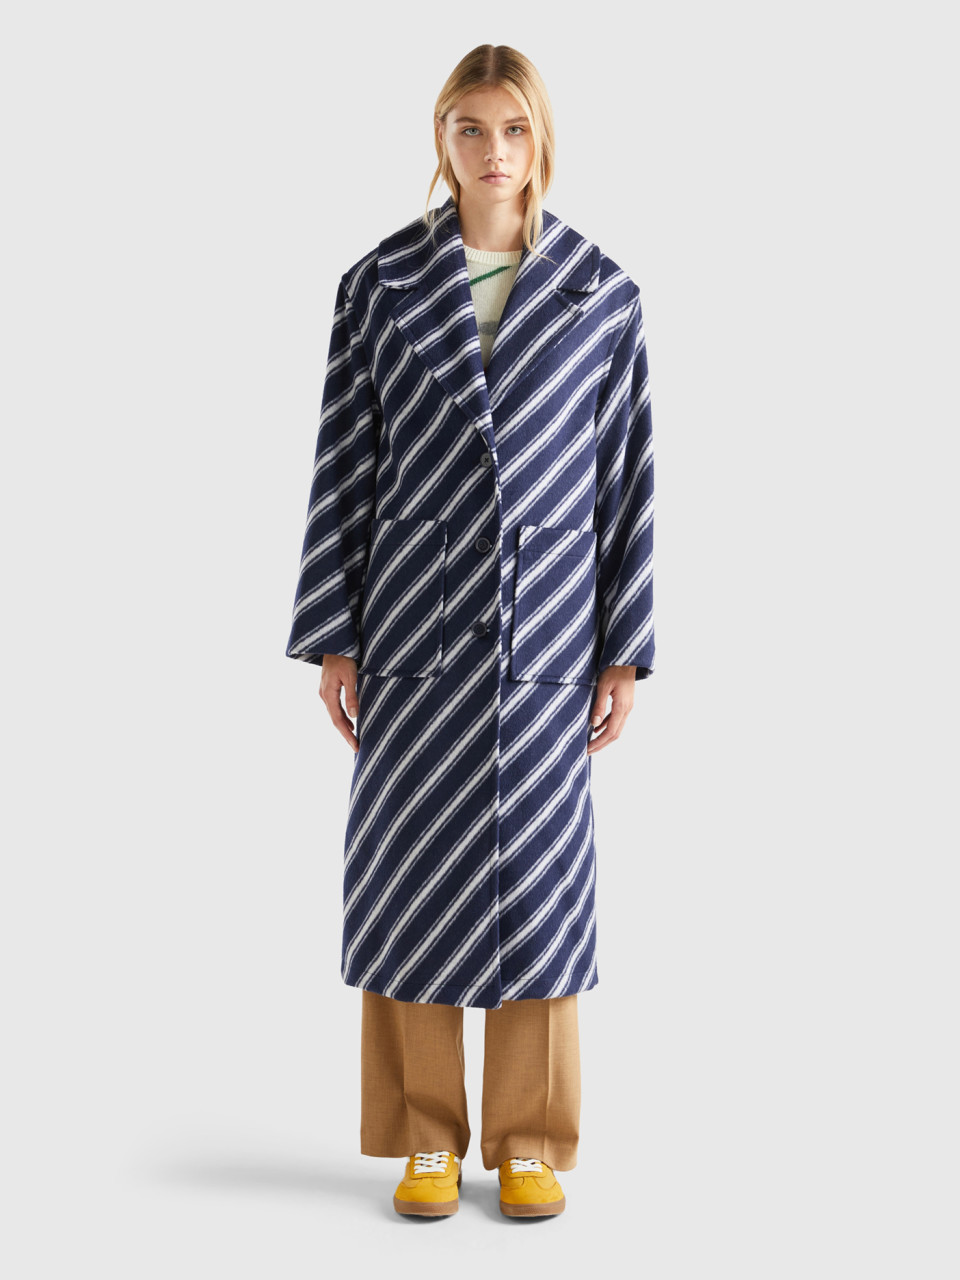 Benetton, Regimental Striped Coat, Blue, Women